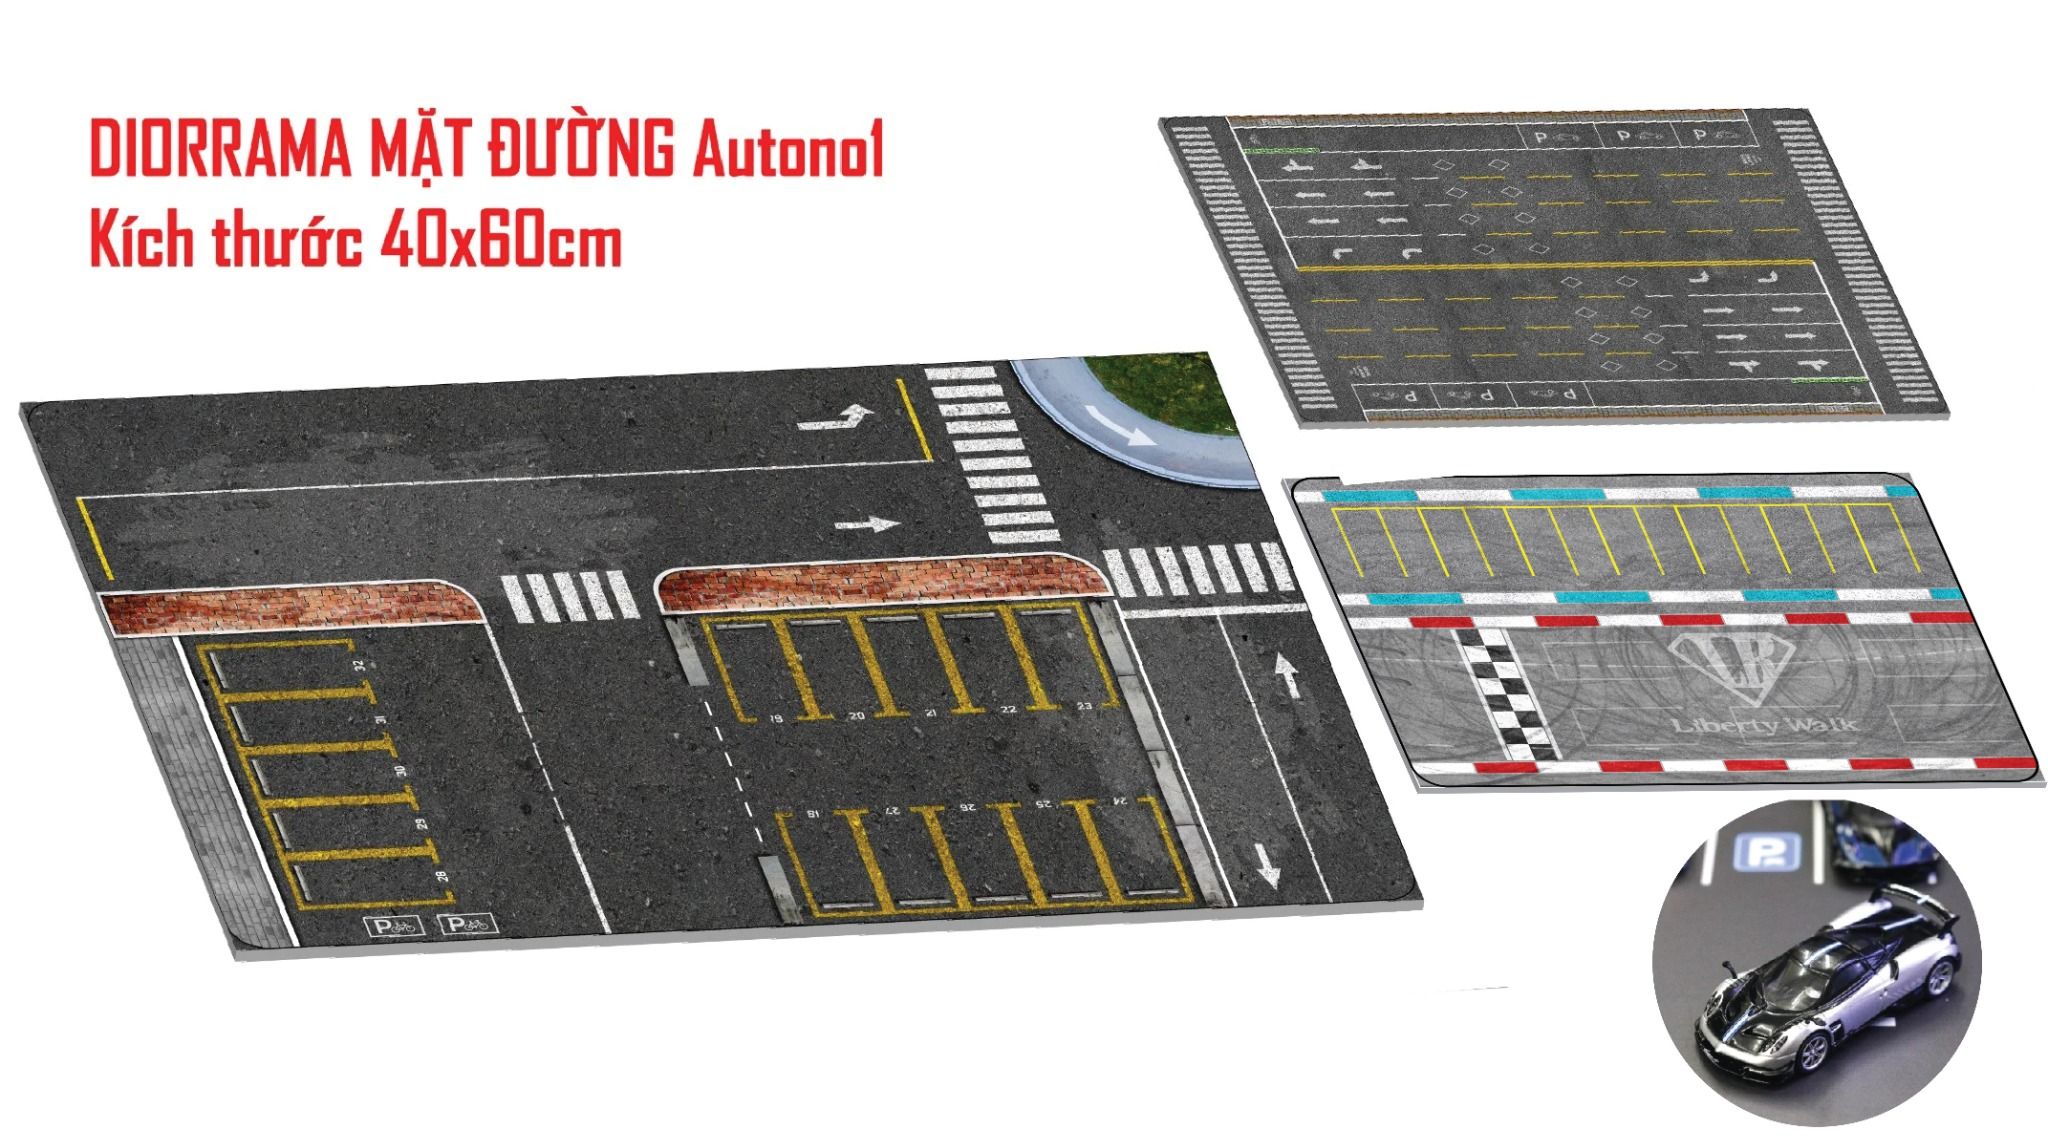  Diorama mặt đường cao tốc 4 lane - bãi đậu xe ô tô kích thước 40x60cm dành cho xe mô hình 1:64 Autono1 DR033 